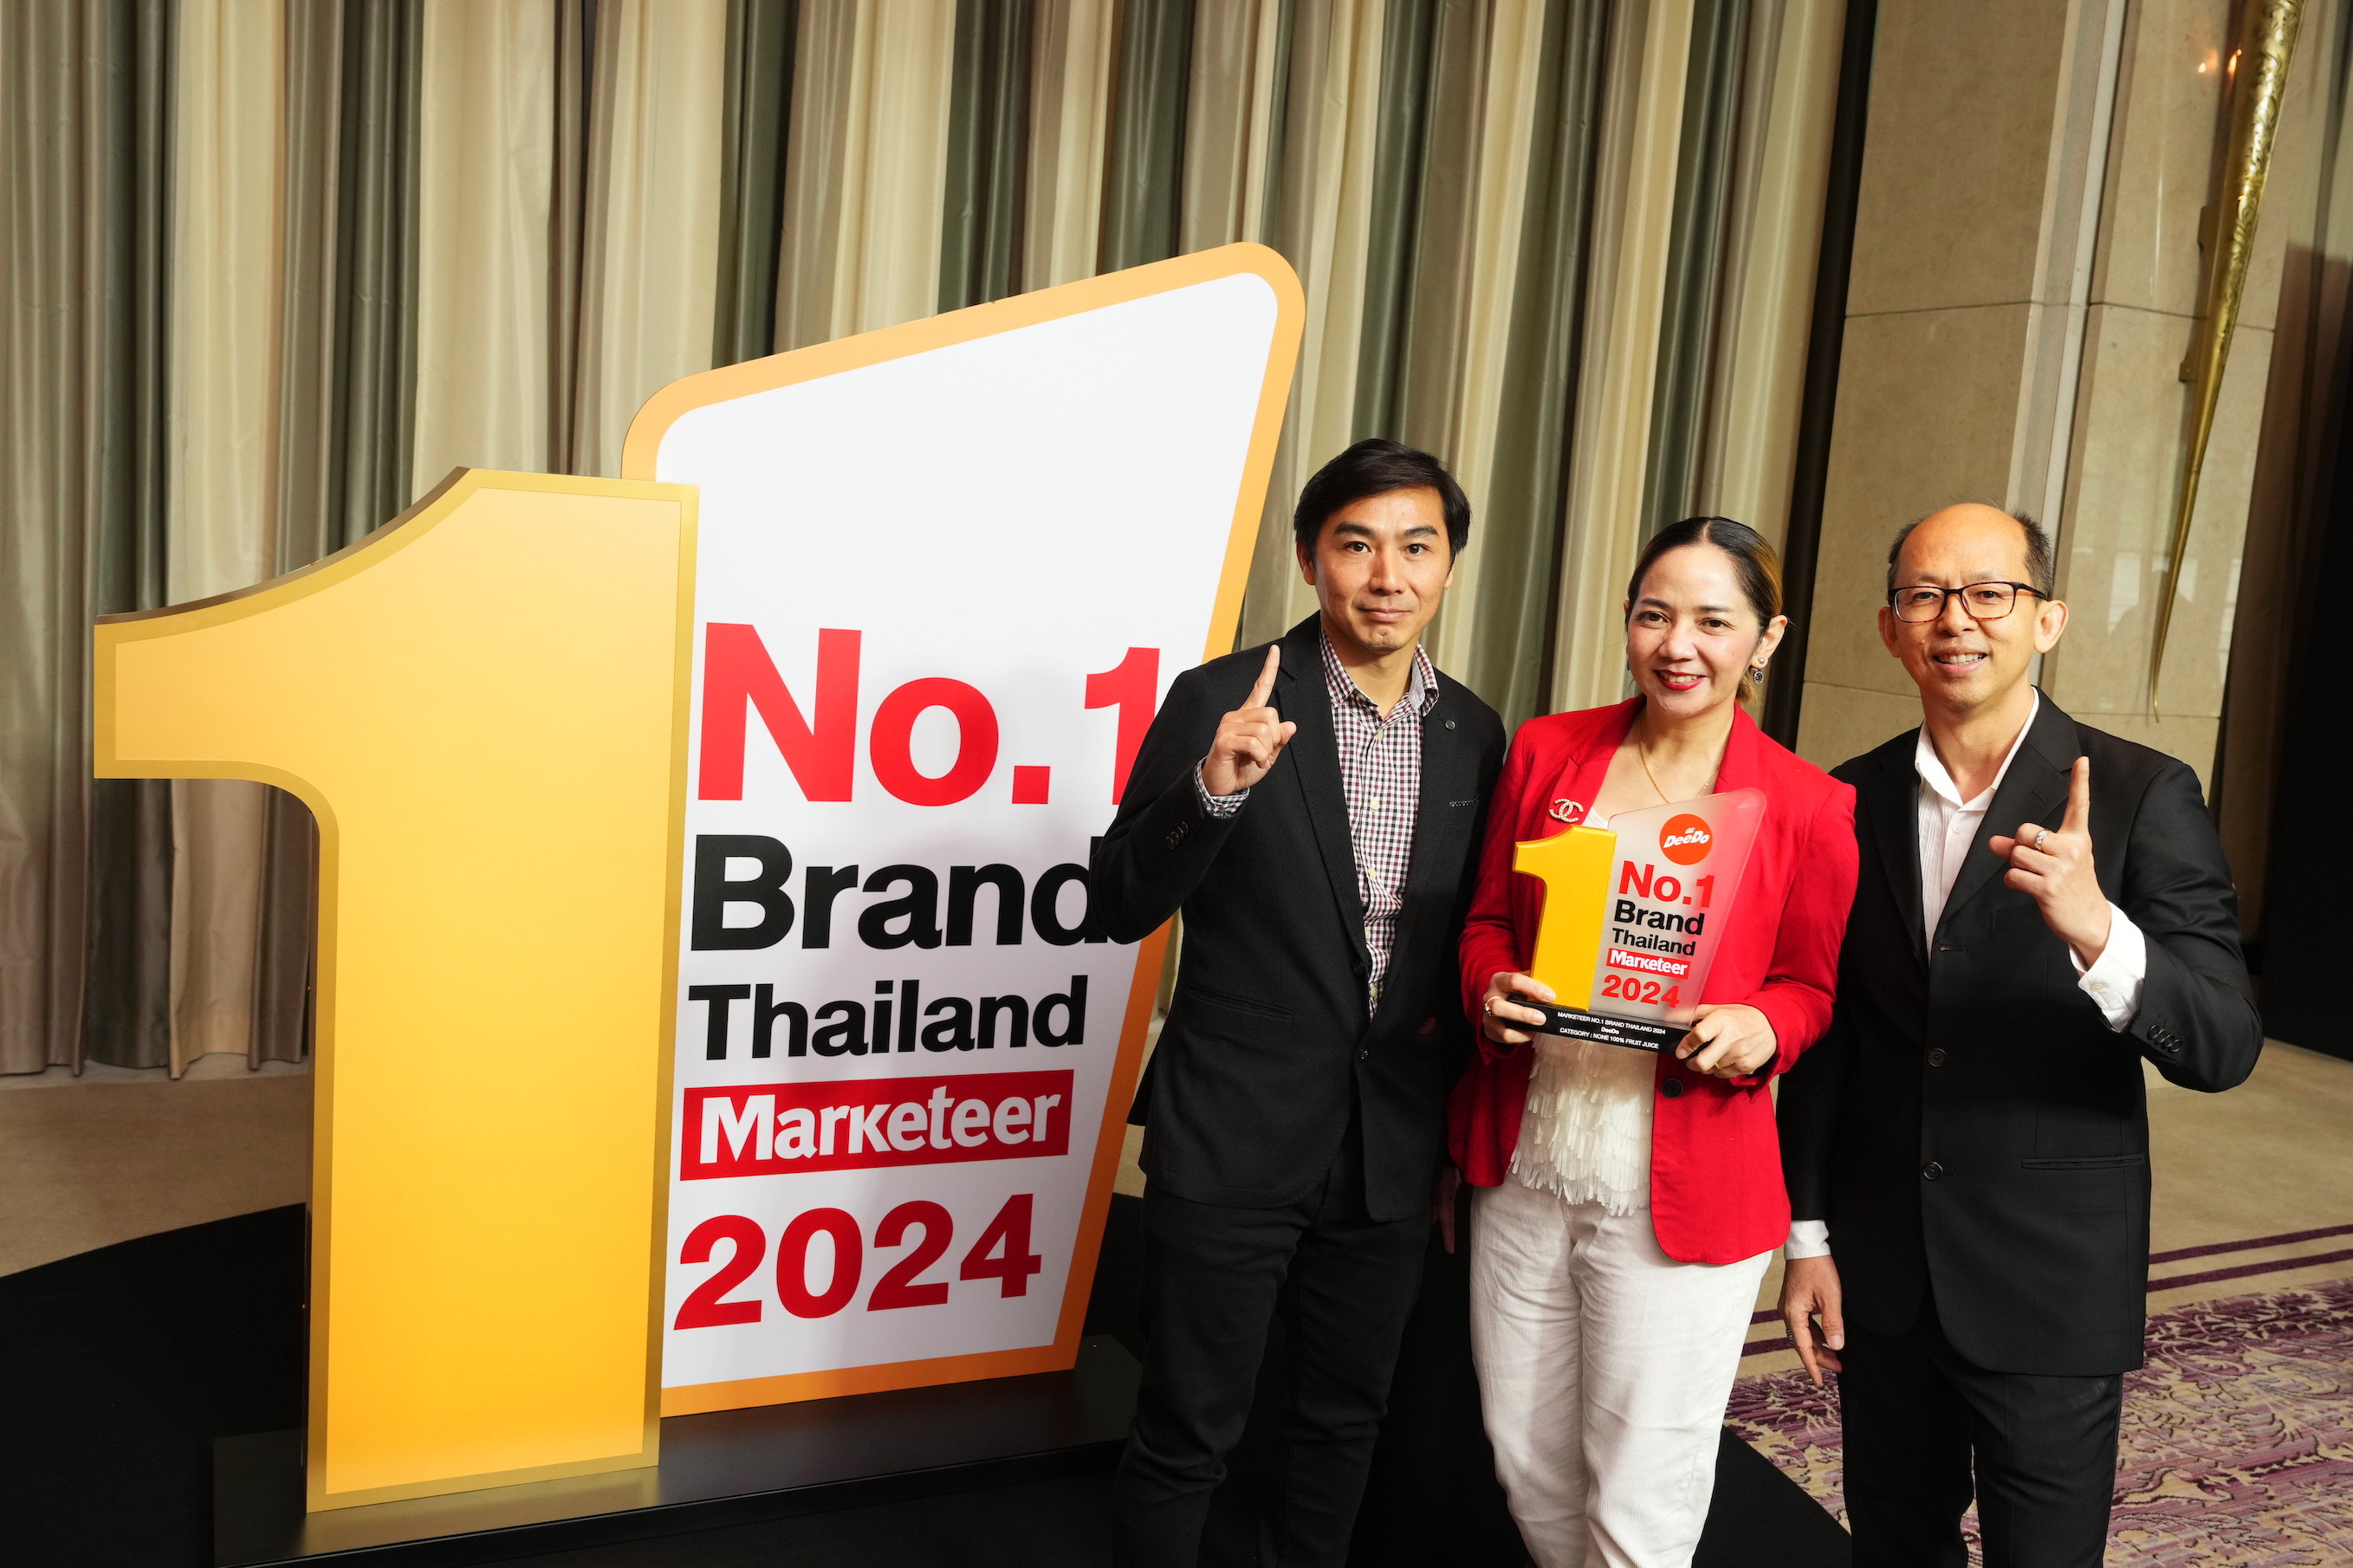 “ดีโด้” สร้างปรากฏการณ์ผู้นำตลาดน้ำผลไม้ (Non 100%)  ที่ครองใจผู้บริโภคต่อเนื่องยาวนาน 6 ปีซ้อน  พร้อมคว้ารางวัล Marketeer No.1 Brand Thailand 2023 -2024